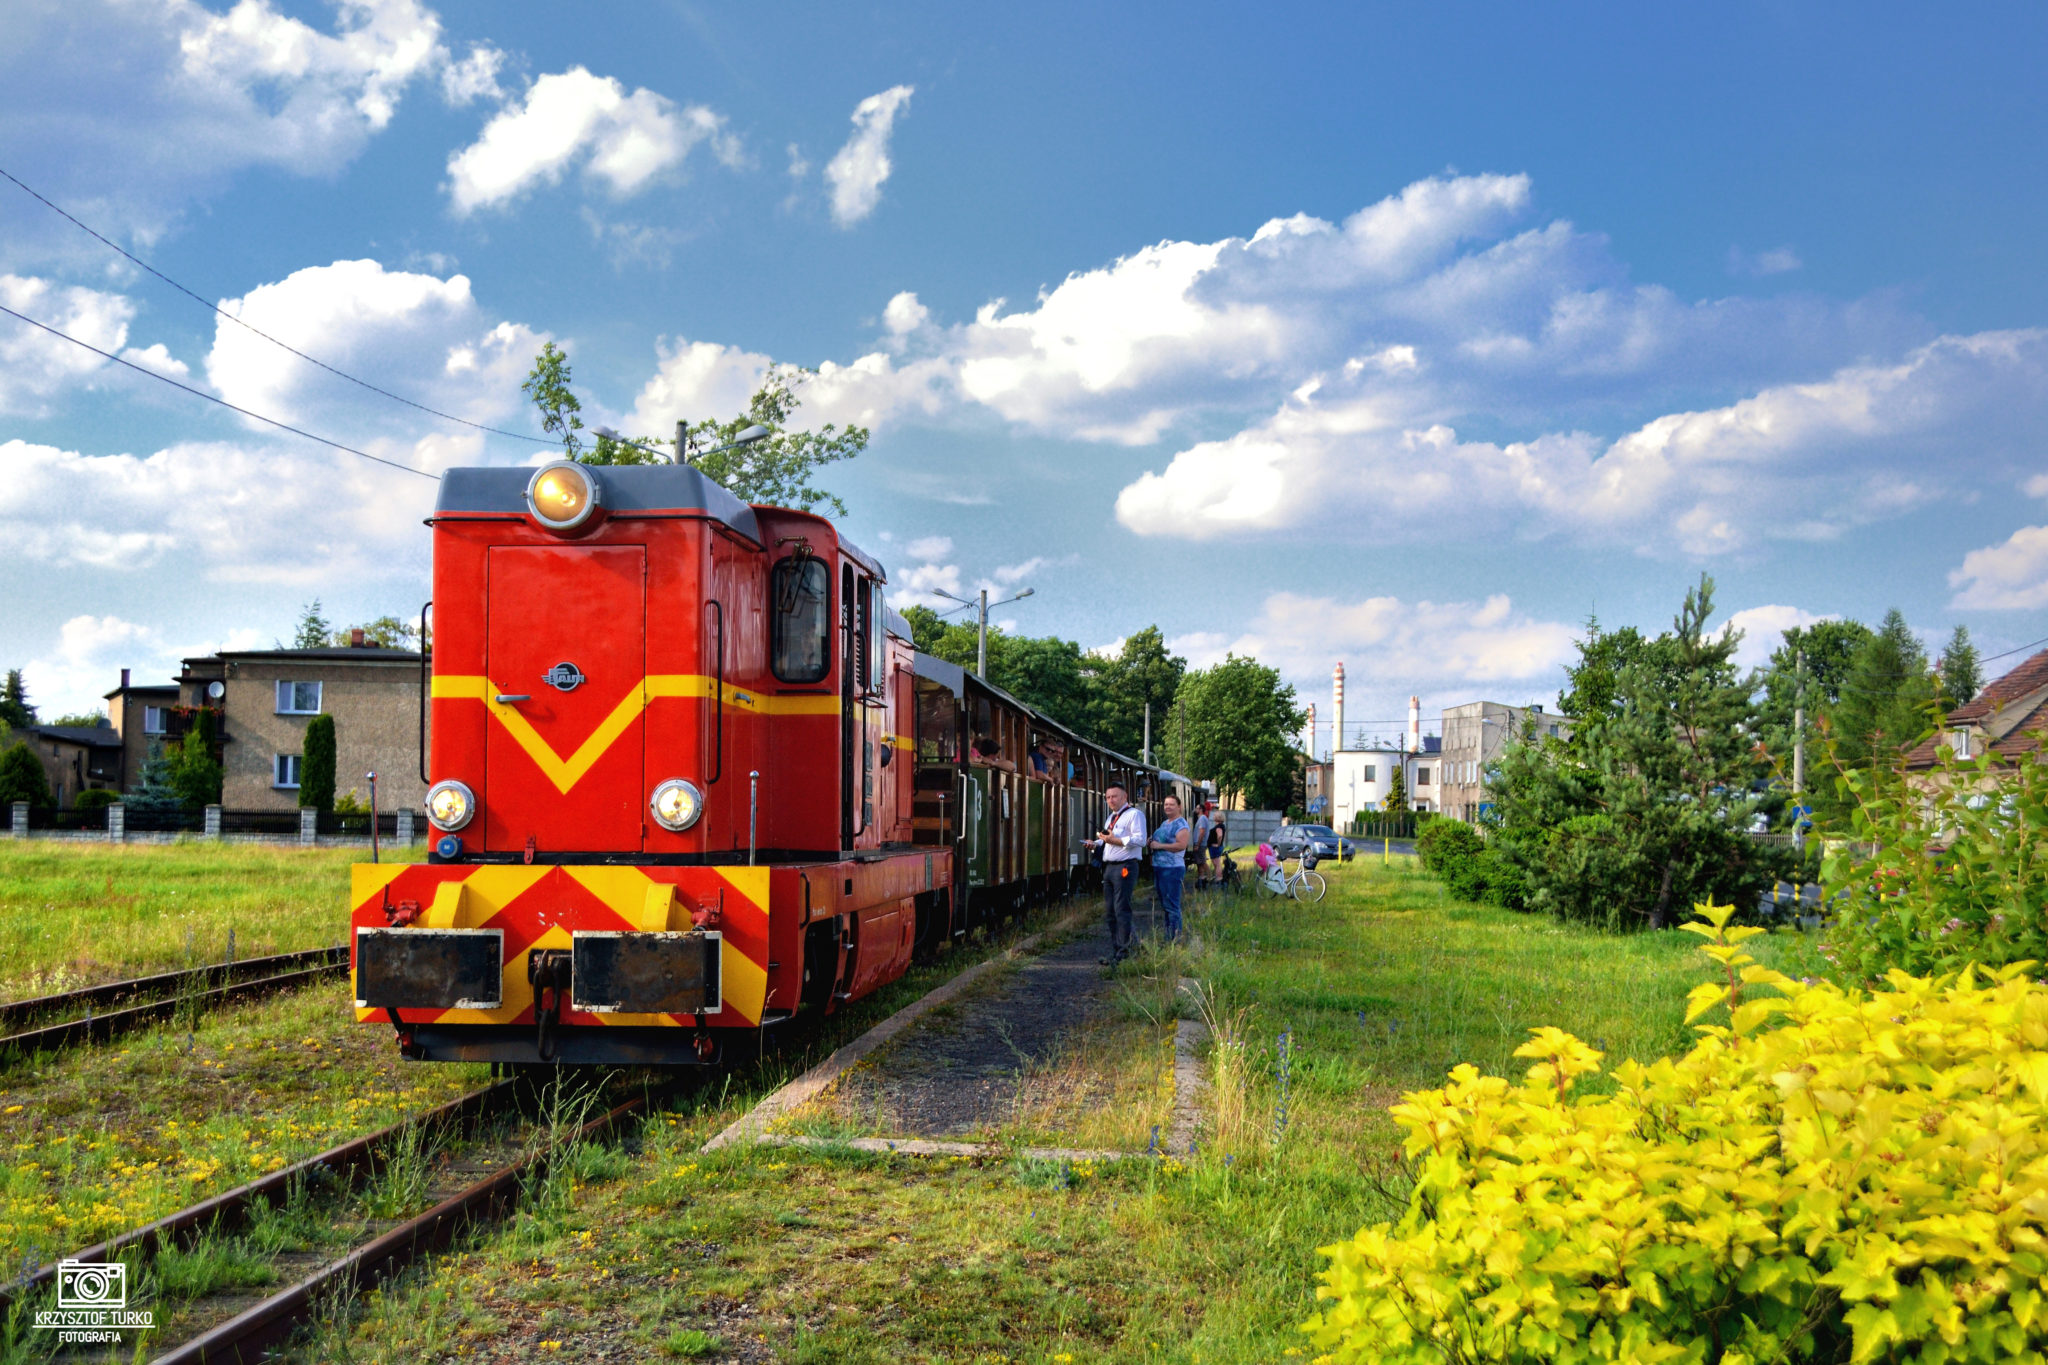 czerwony pociąg znajdujący się na torach, po prawej stronie osoby stojące na terenie zieleni